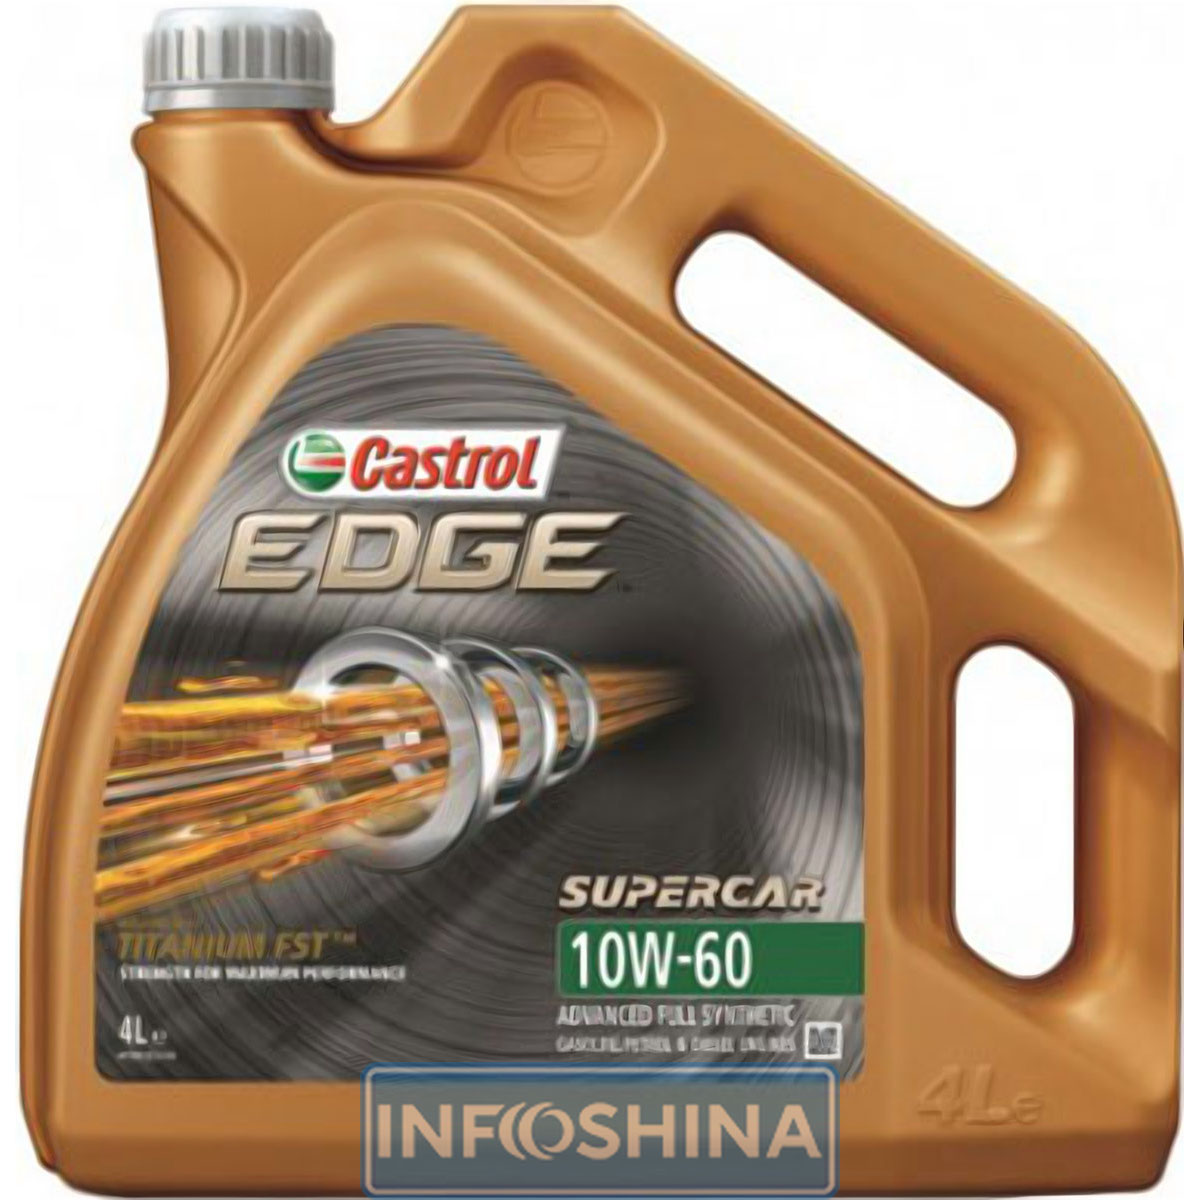 Купить масло Castrol Edge SuperCar 10W-60 (4л)